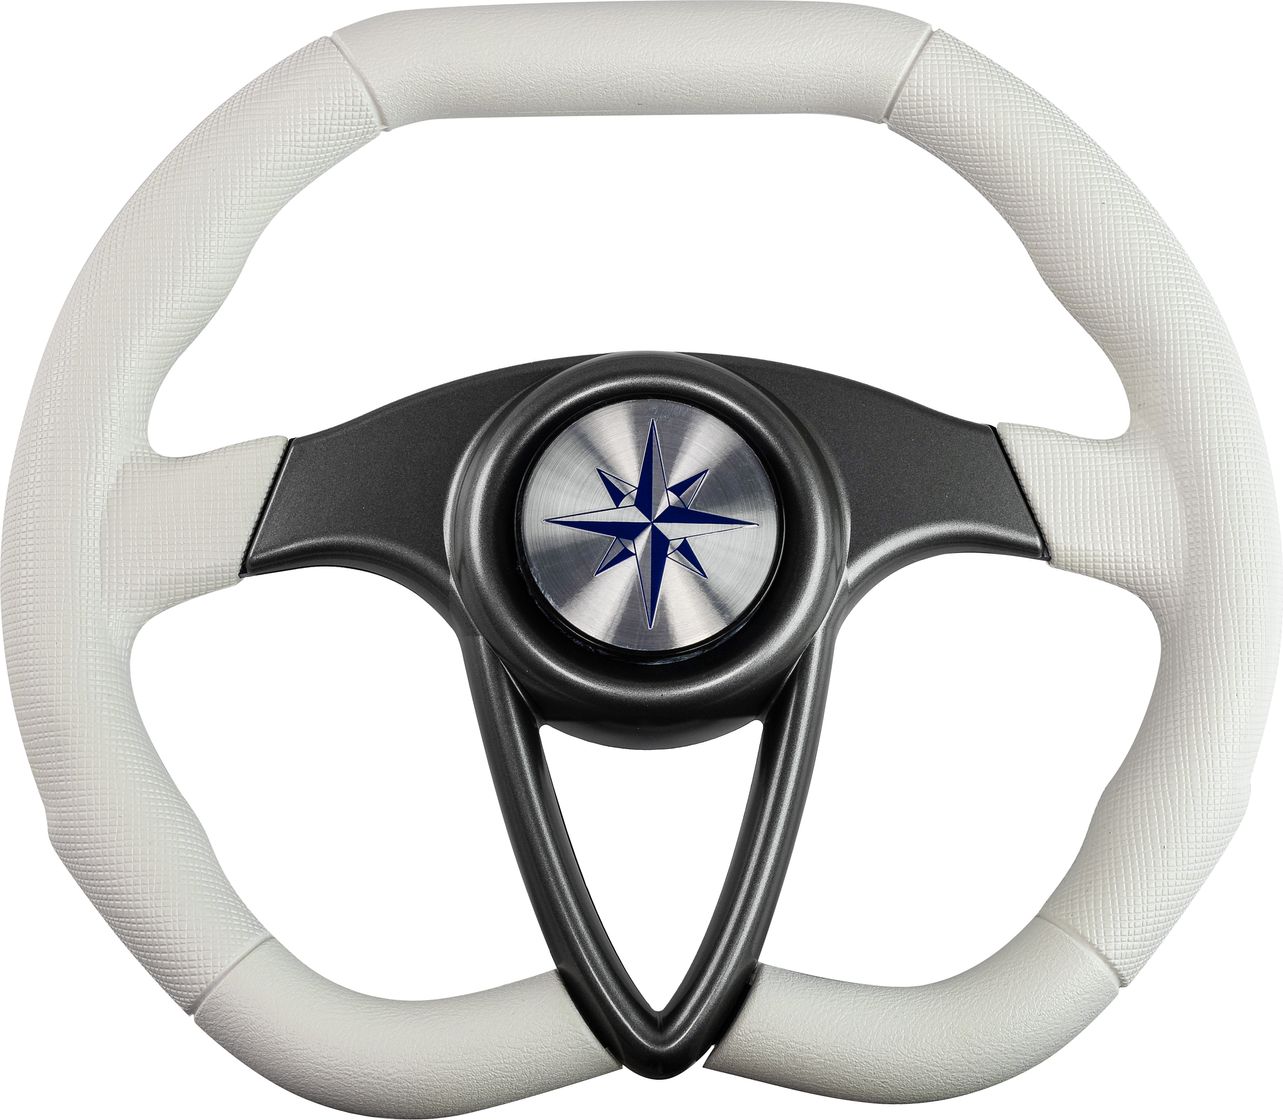 Рулевое колесо BARRACUDA обод белый, спицы серебряные д. 350 мм VN135002-08 рулевое колесо leader plast белый обод серебряные спицы д 330 мм vn8330 08